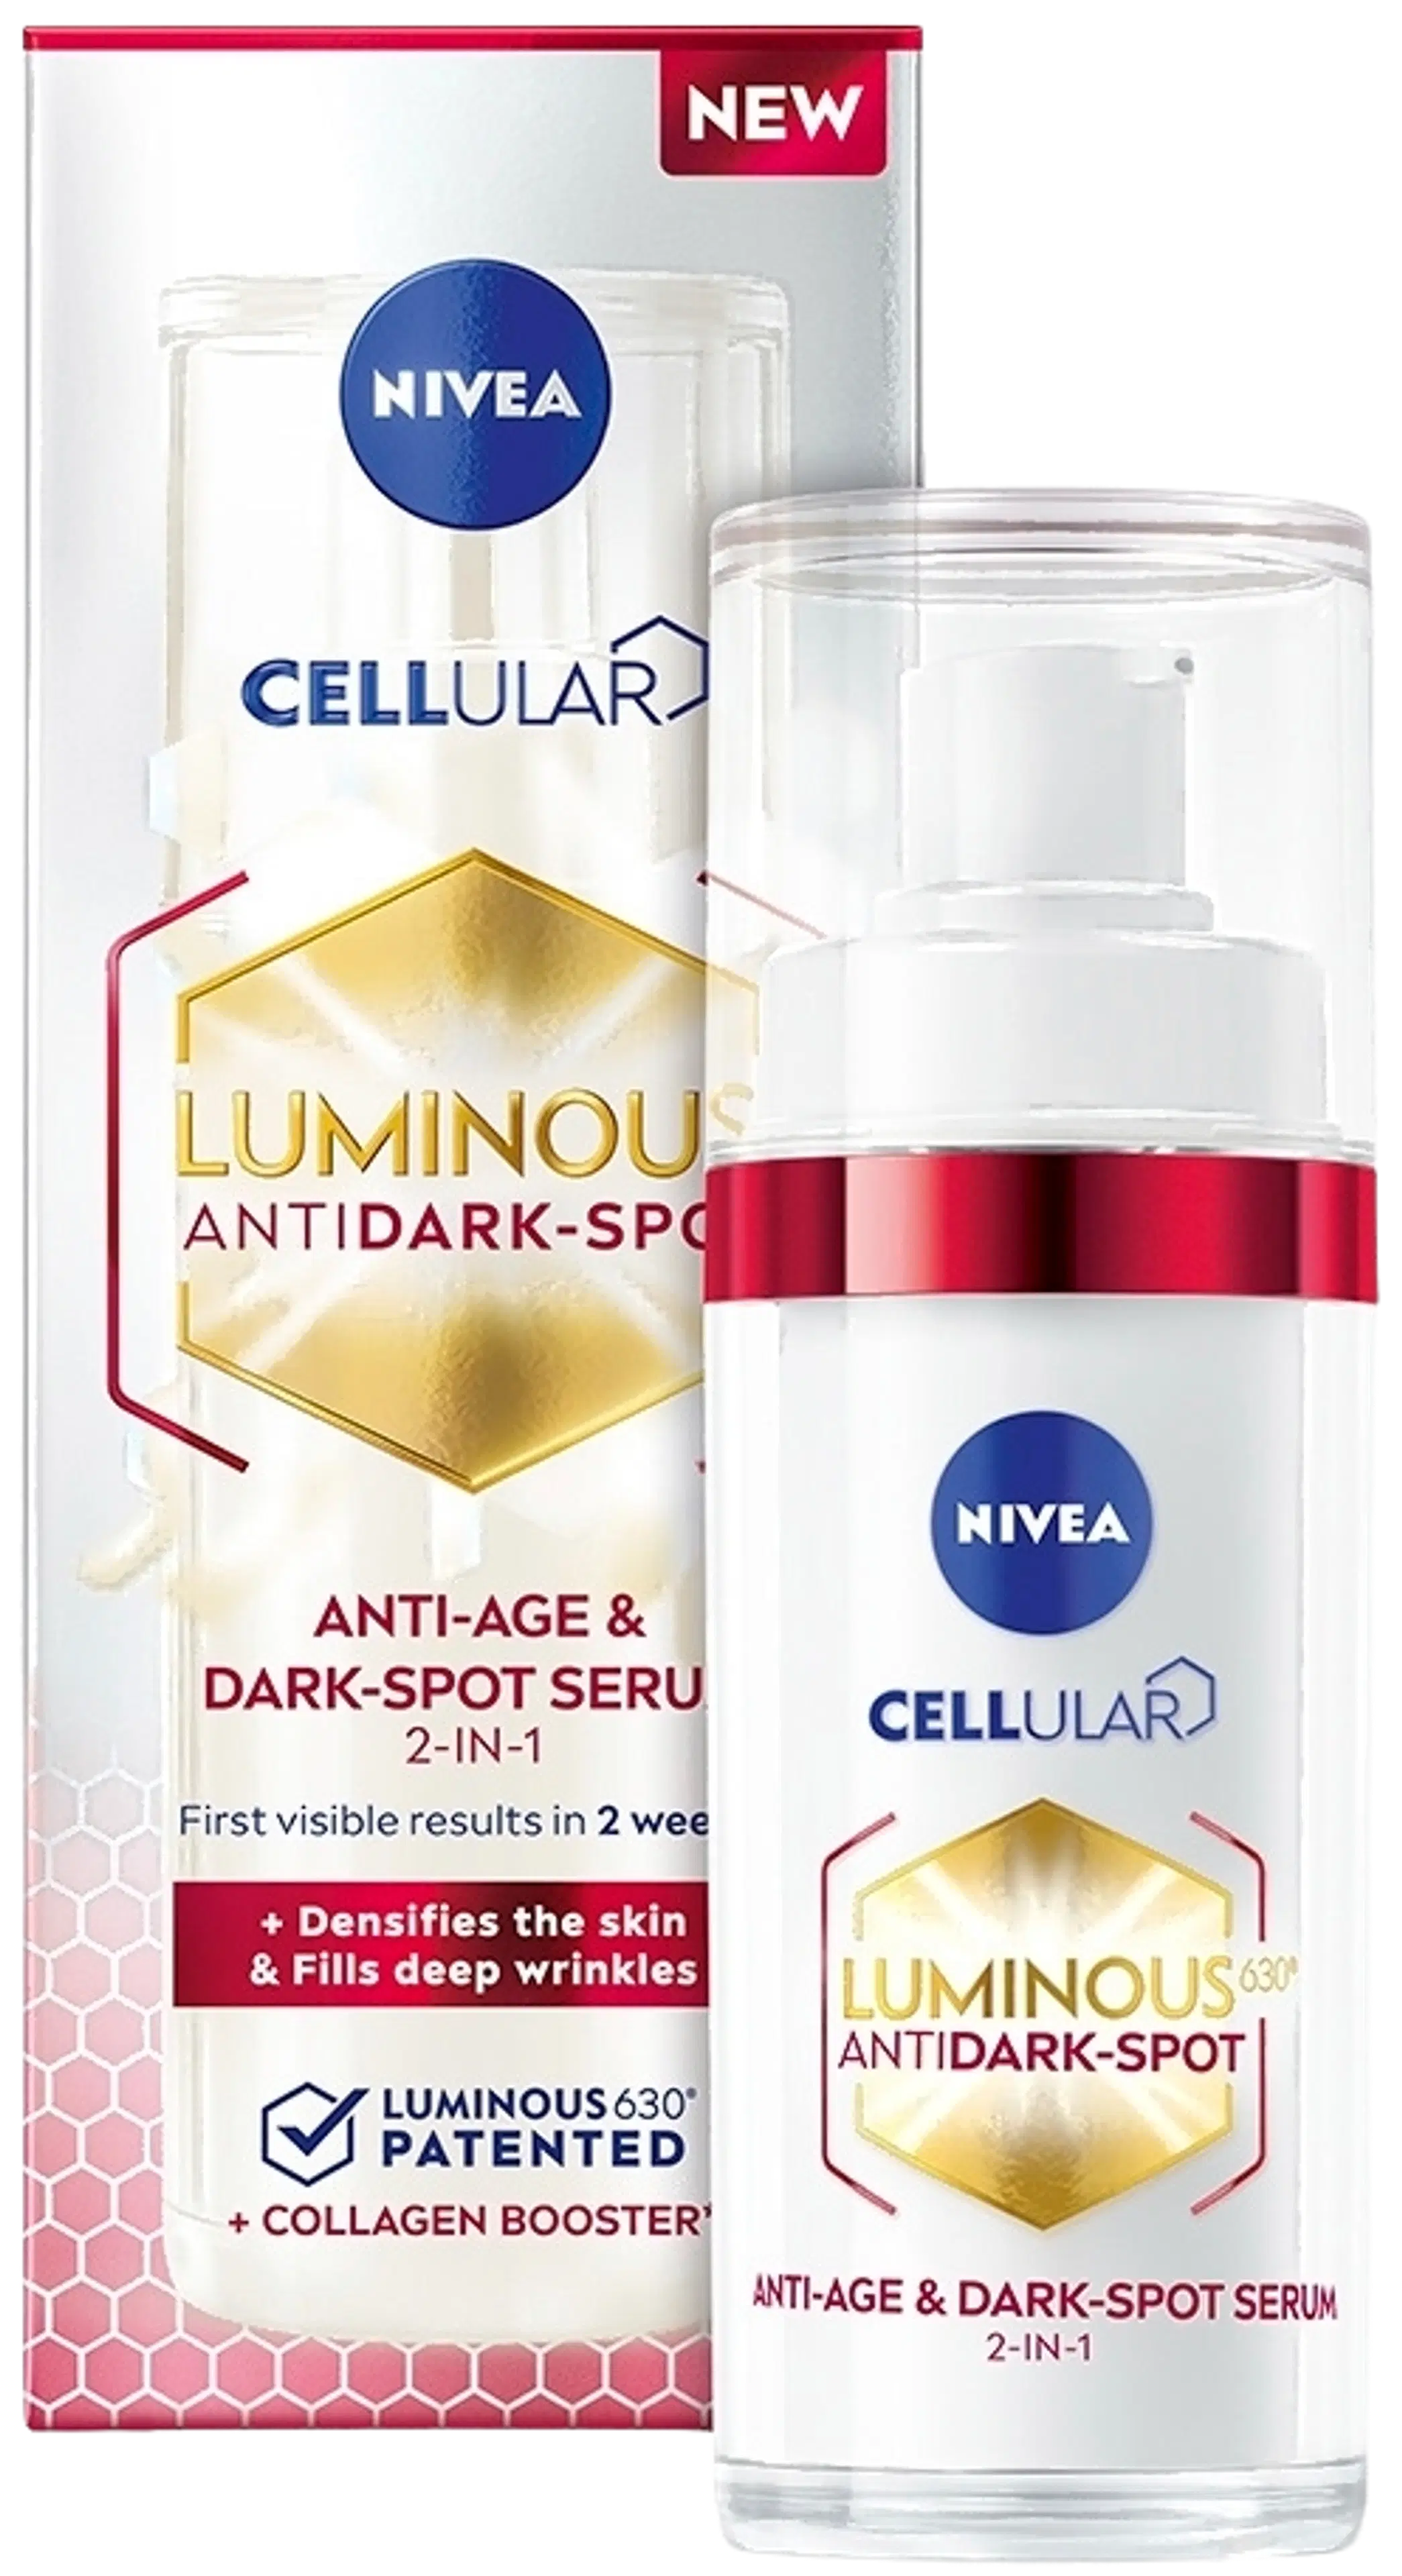 NIVEA 30ml Cellular Luminous630 Anti-Age & Dark-Spot Serum -kasvoseerumi